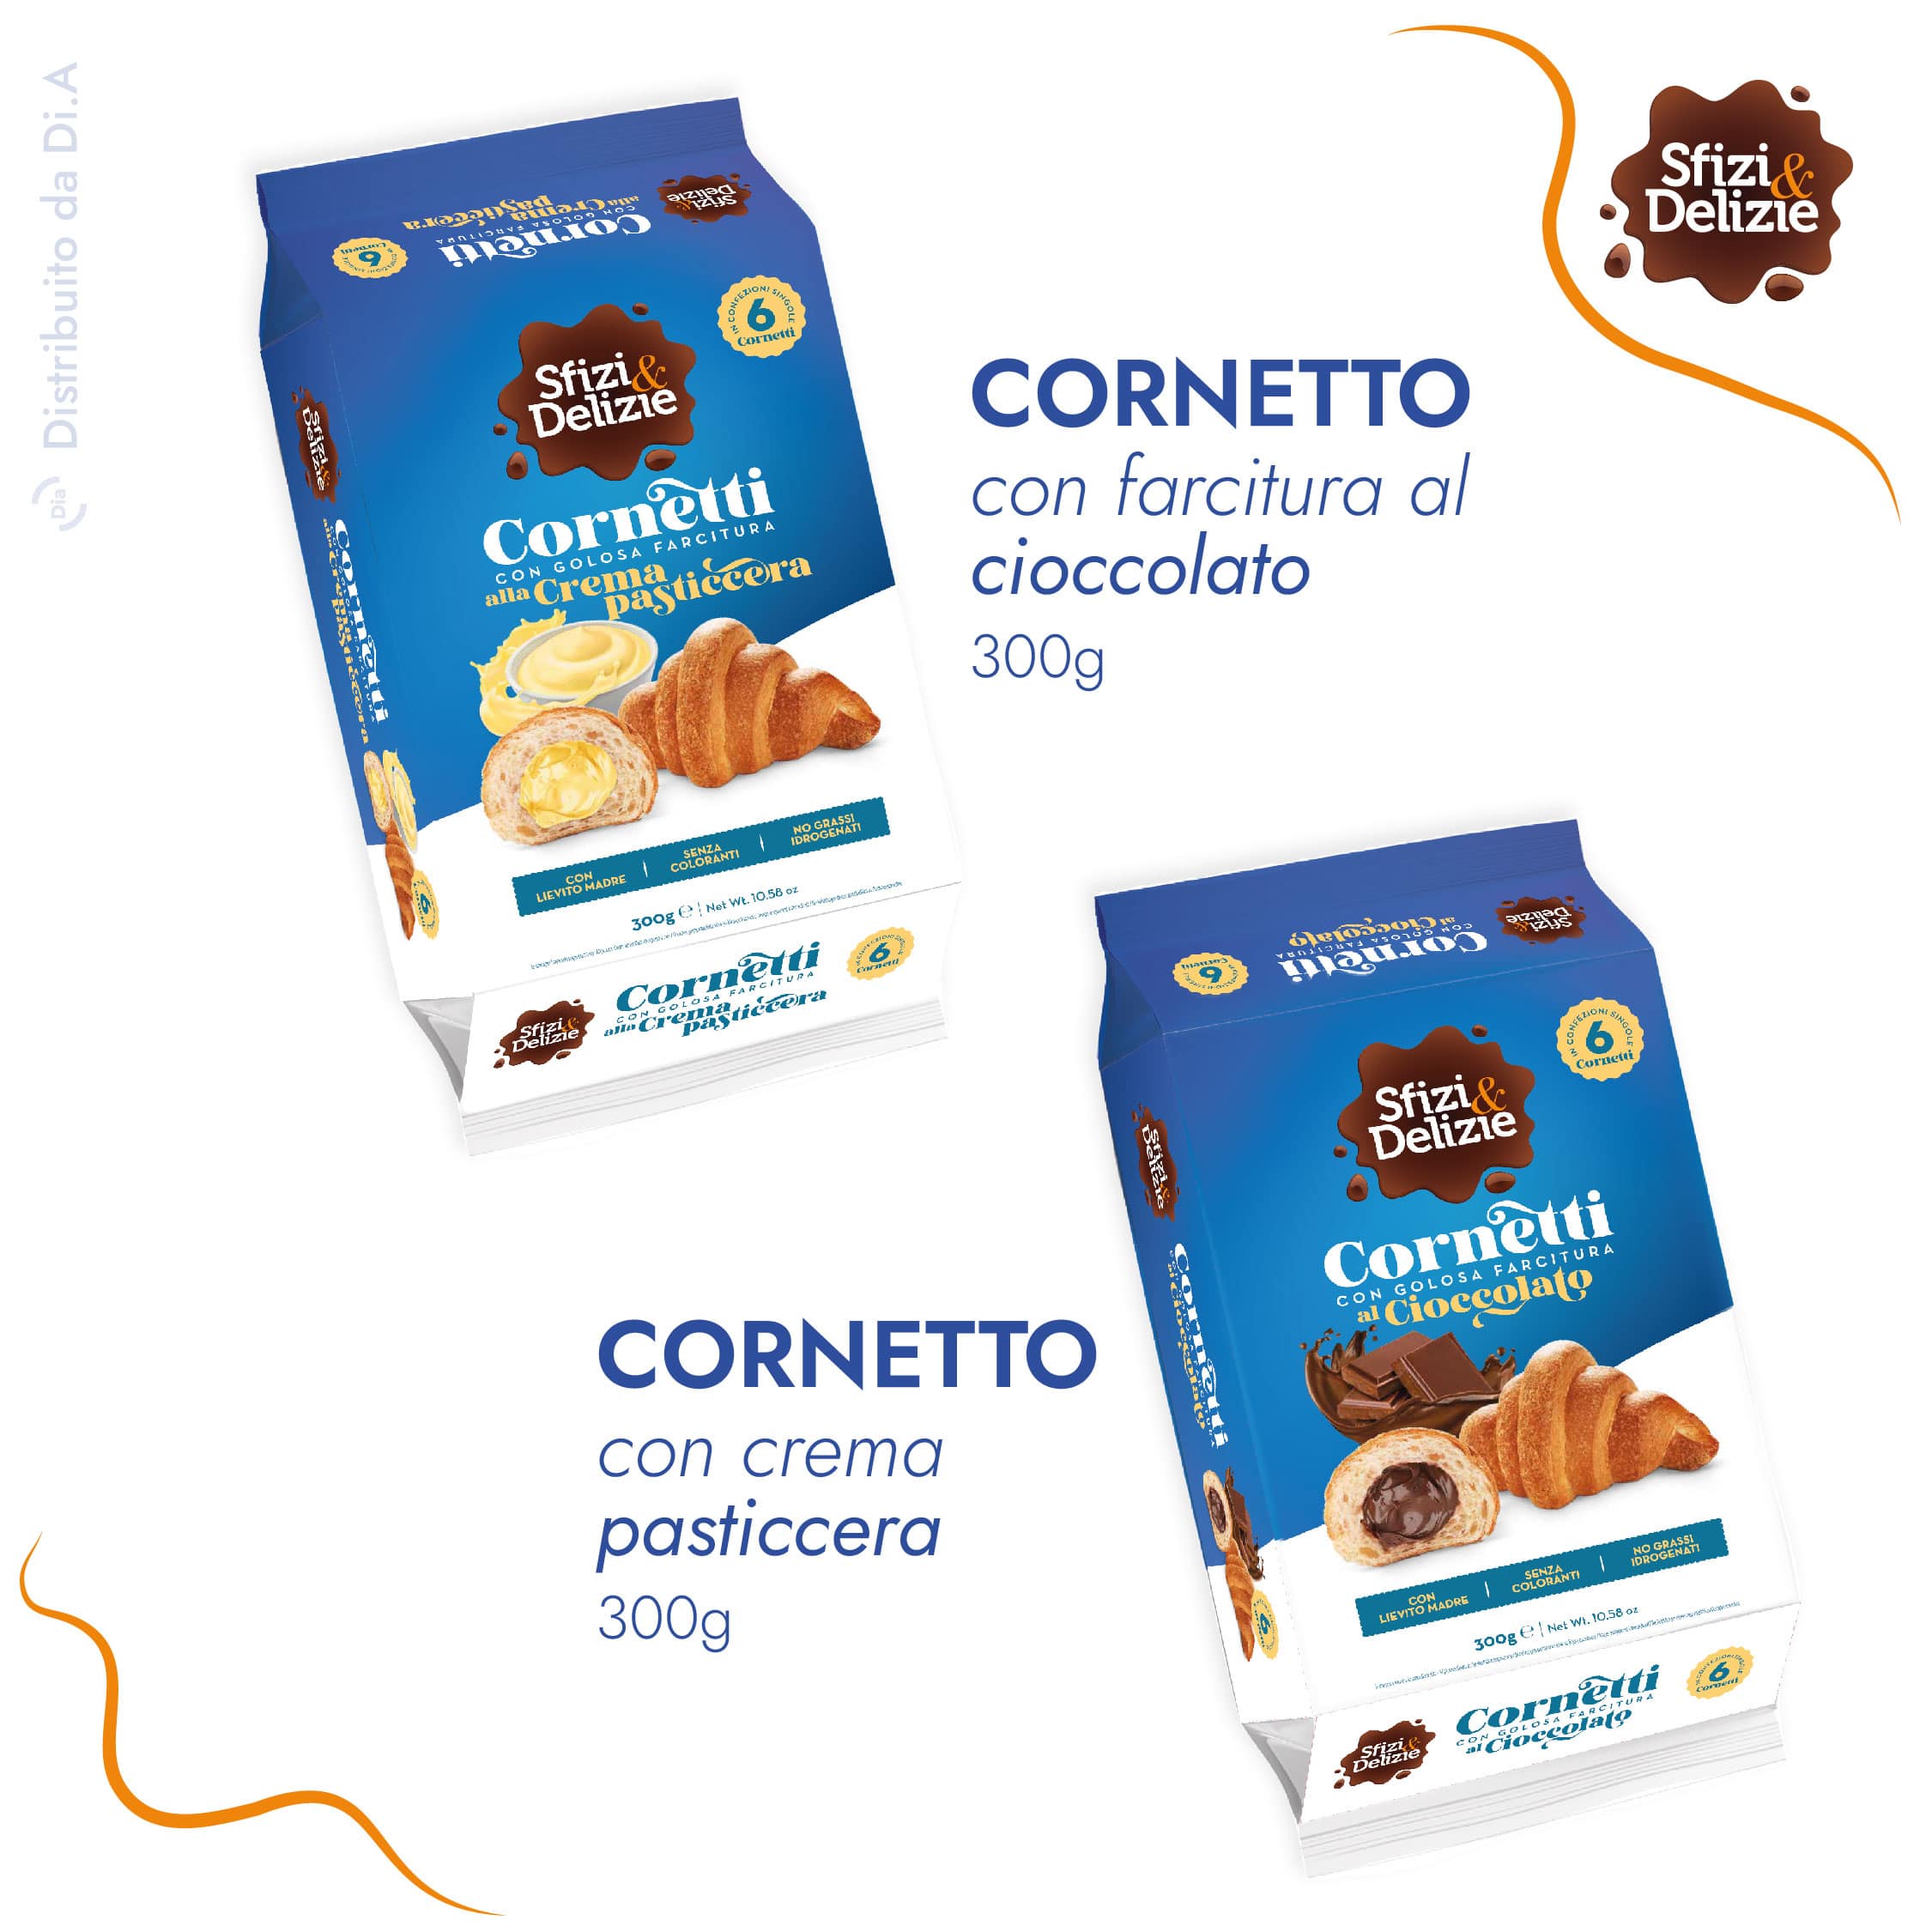 Cornetti croissant con farcitura al cioccolato e con crema pasticcera - Sfizi & Delizie distribuito da Dia Srl